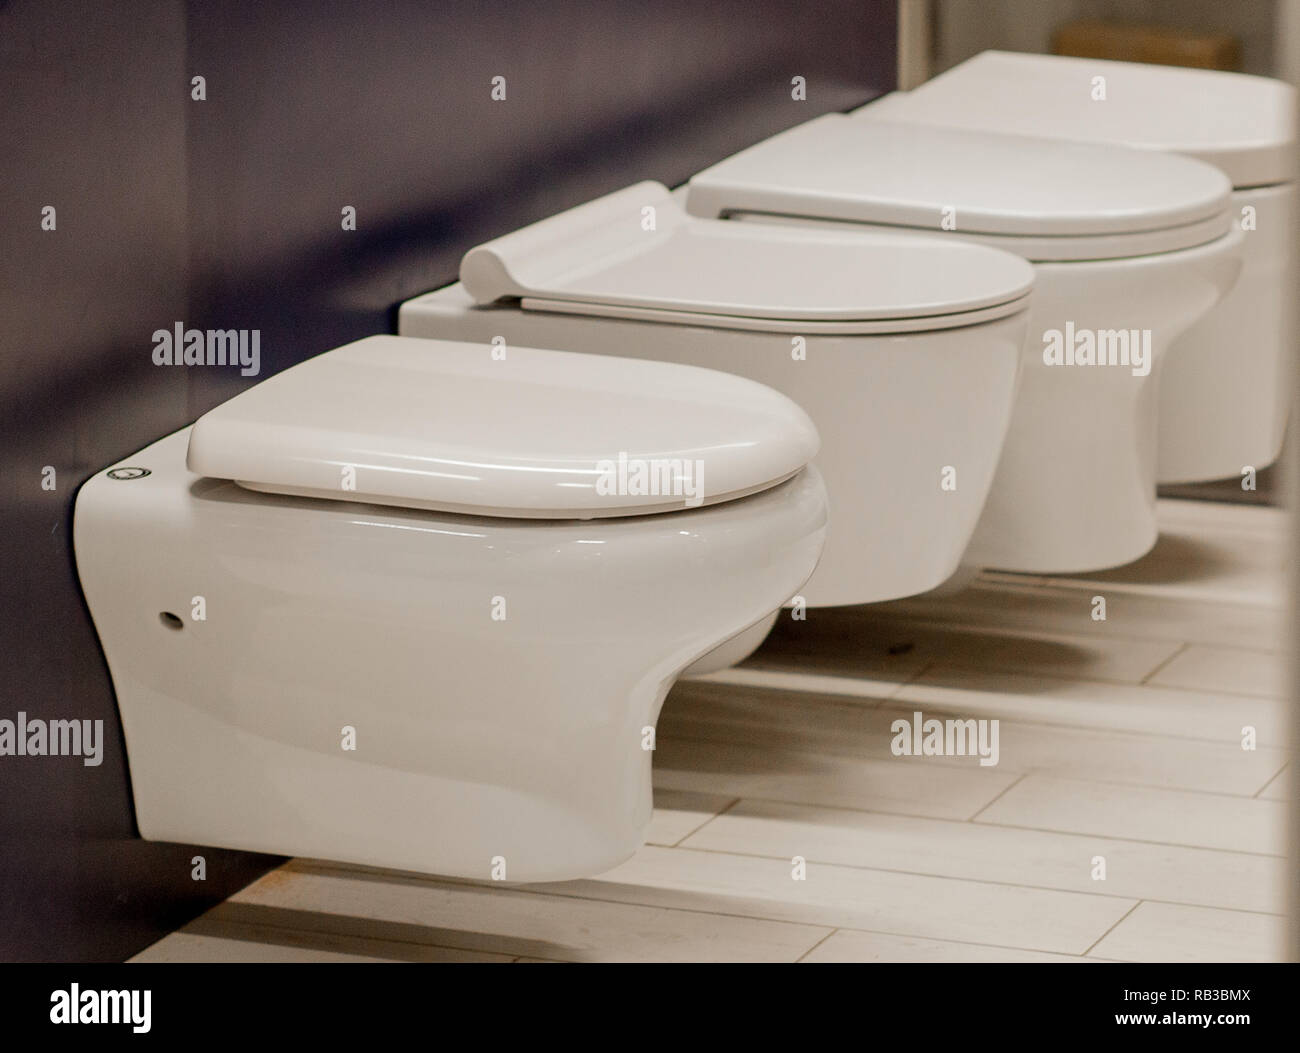 Verschwommenes Bild von WC-gang Schalen in einem Baumarkt Stockfotografie -  Alamy